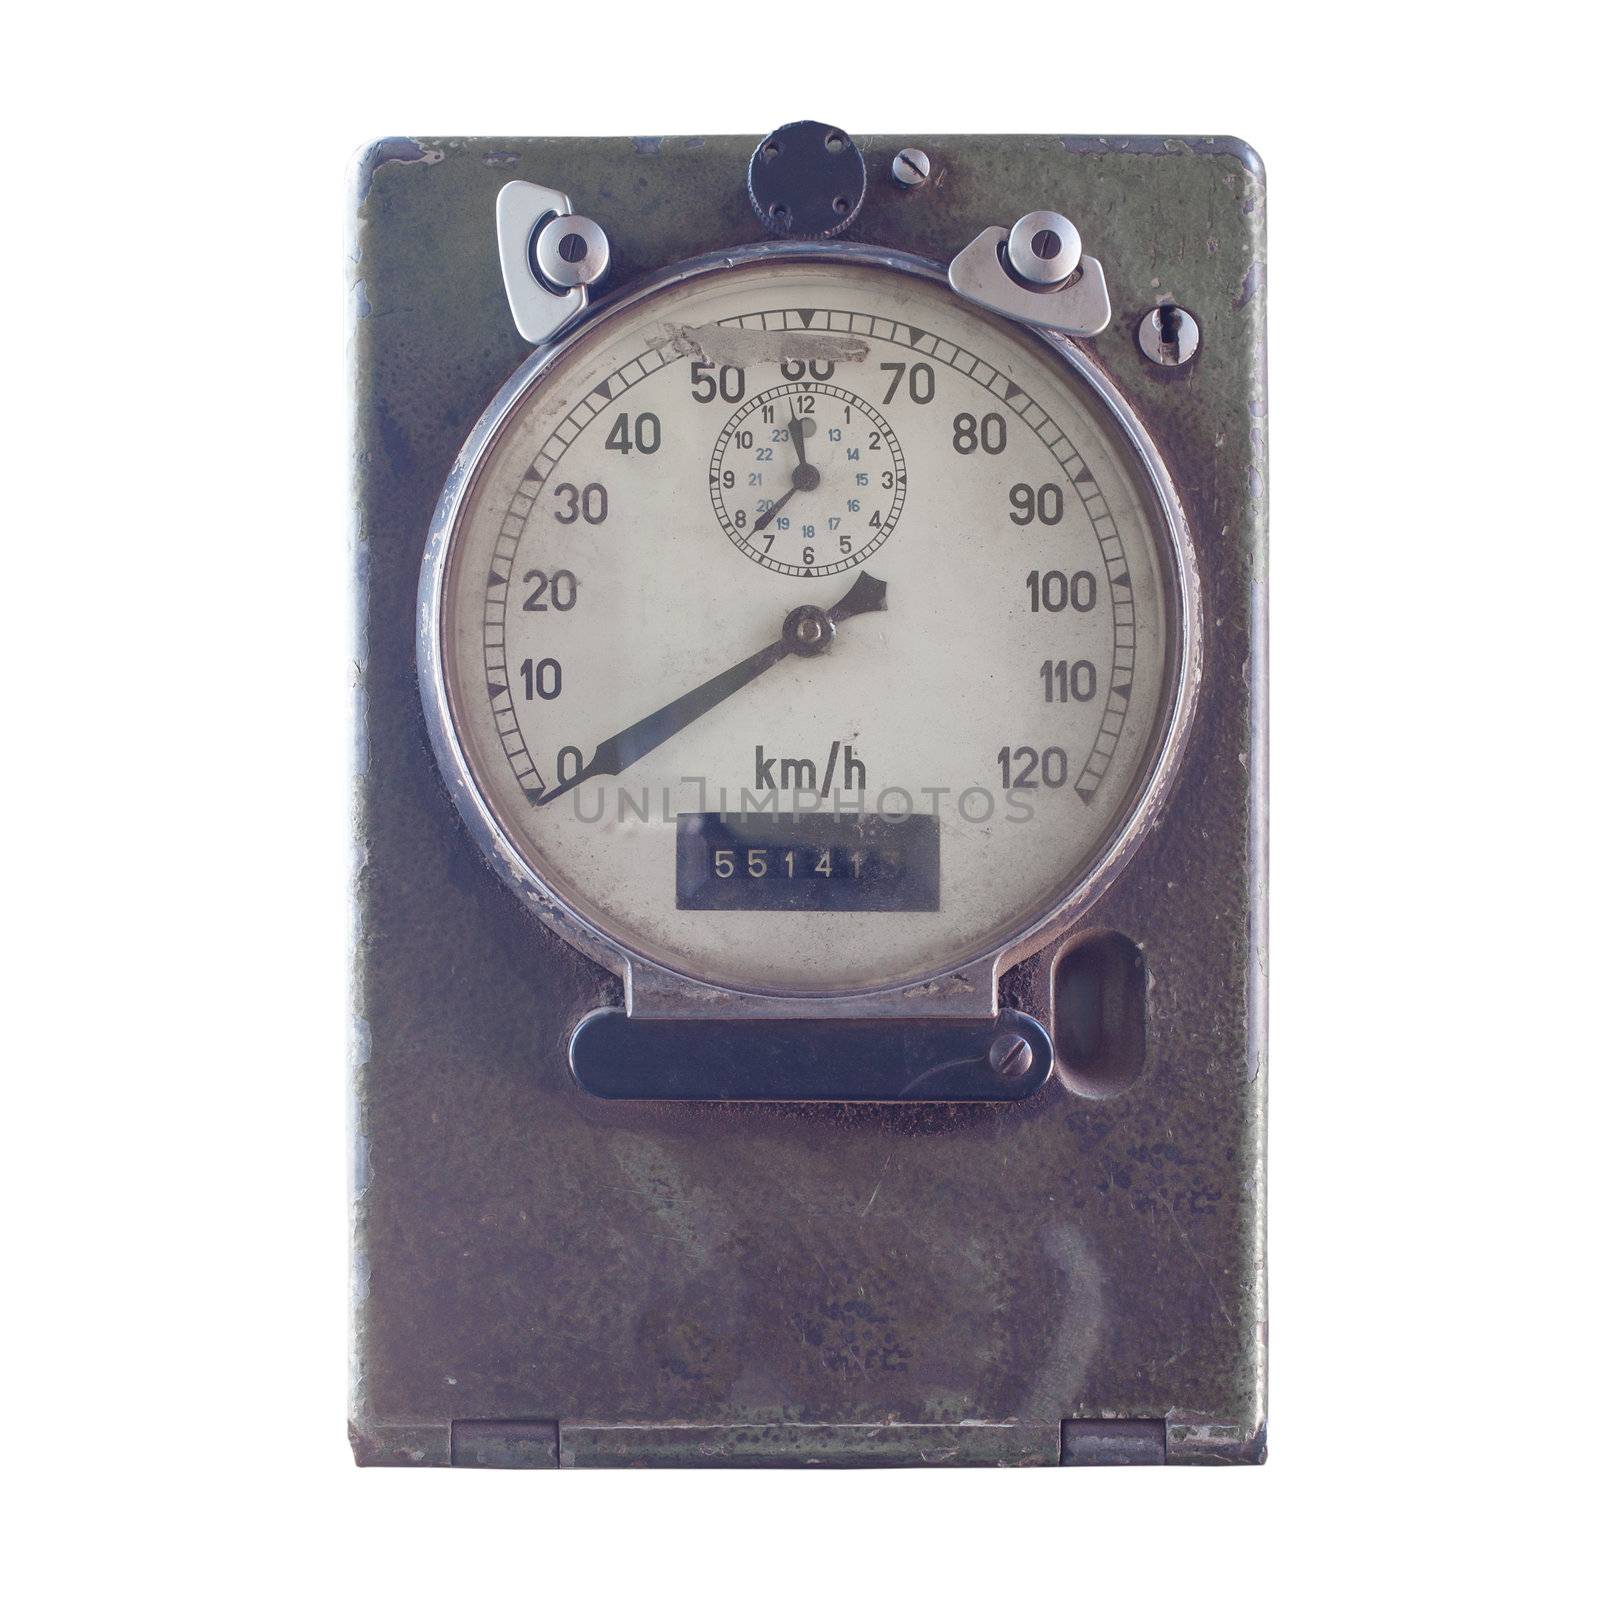 Speed meter or gauge of train, vintage style by FrameAngel